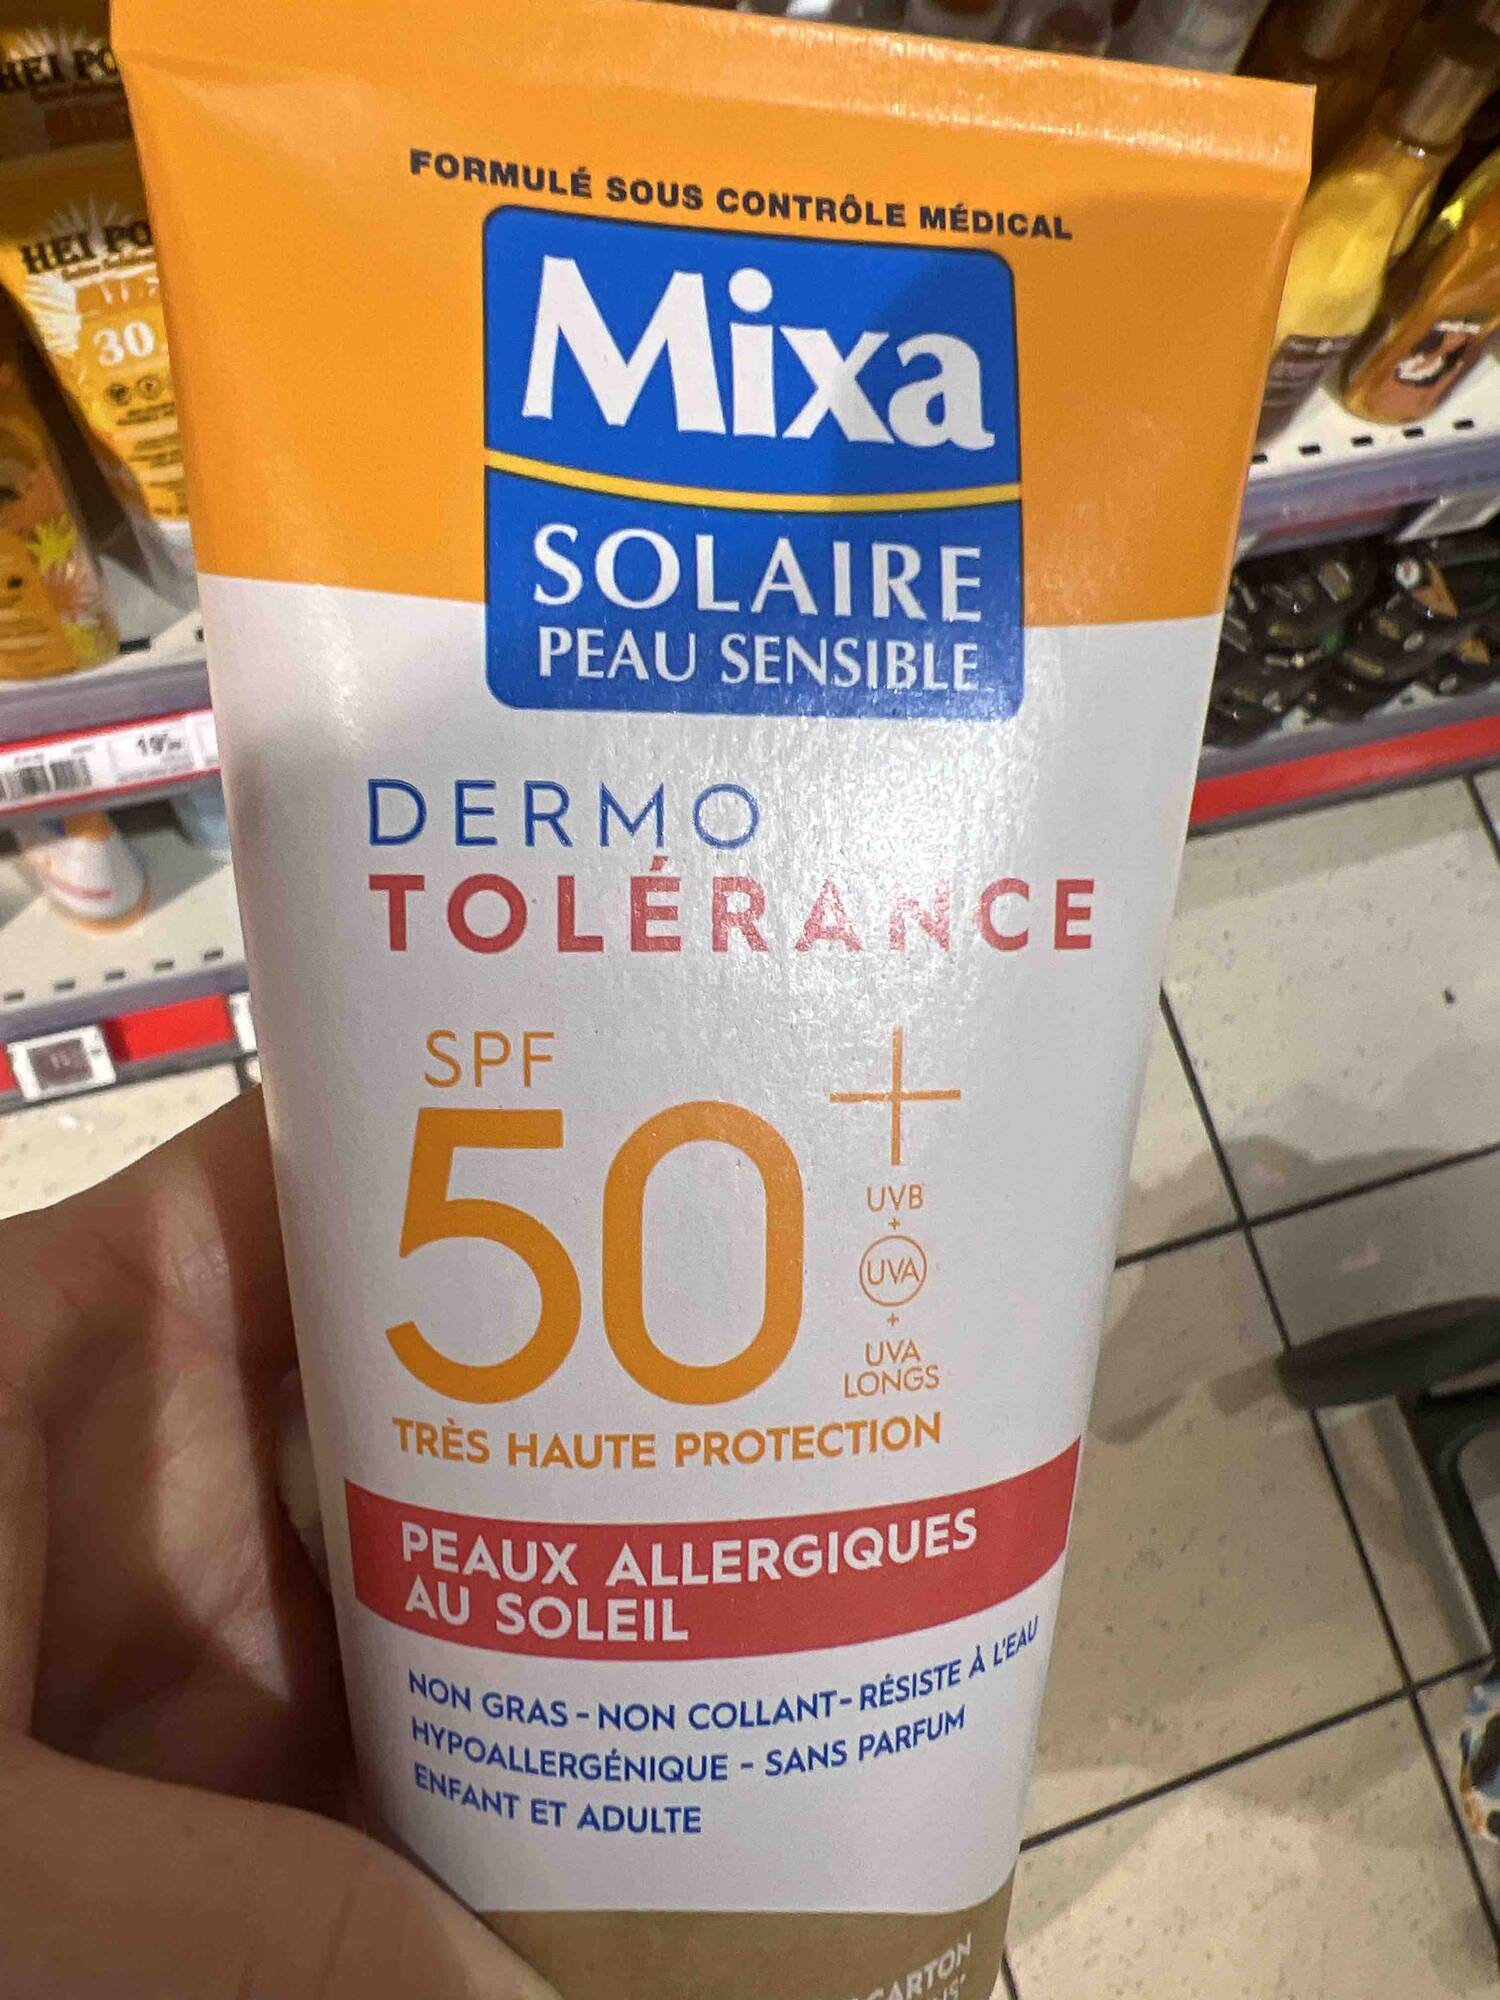 MIXA - Solaire peau sensible - Dermo tolérance SPF 50+